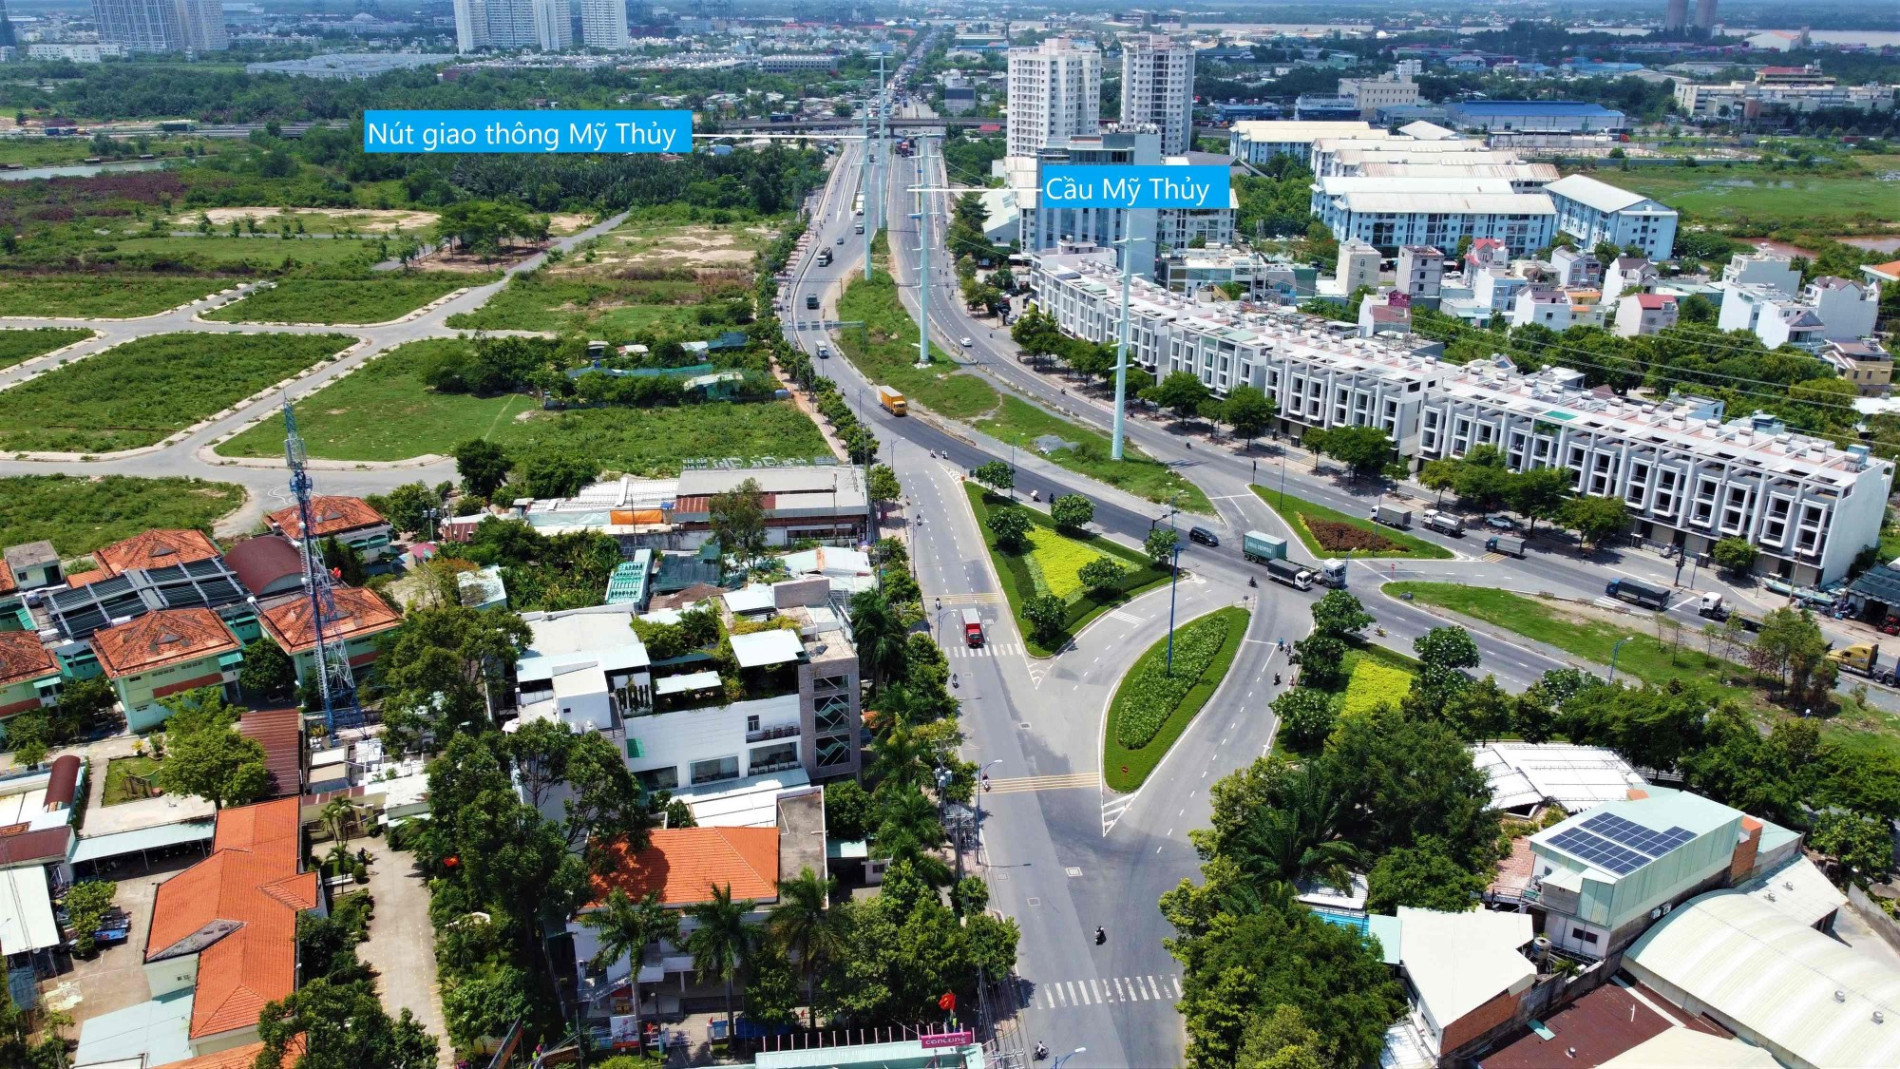 Những khu đất sẽ thu hồi để mở rộng đường Nguyễn Thị Định, đoạn từ cầu Giồng Ông Tố - cầu Mỹ Thủy